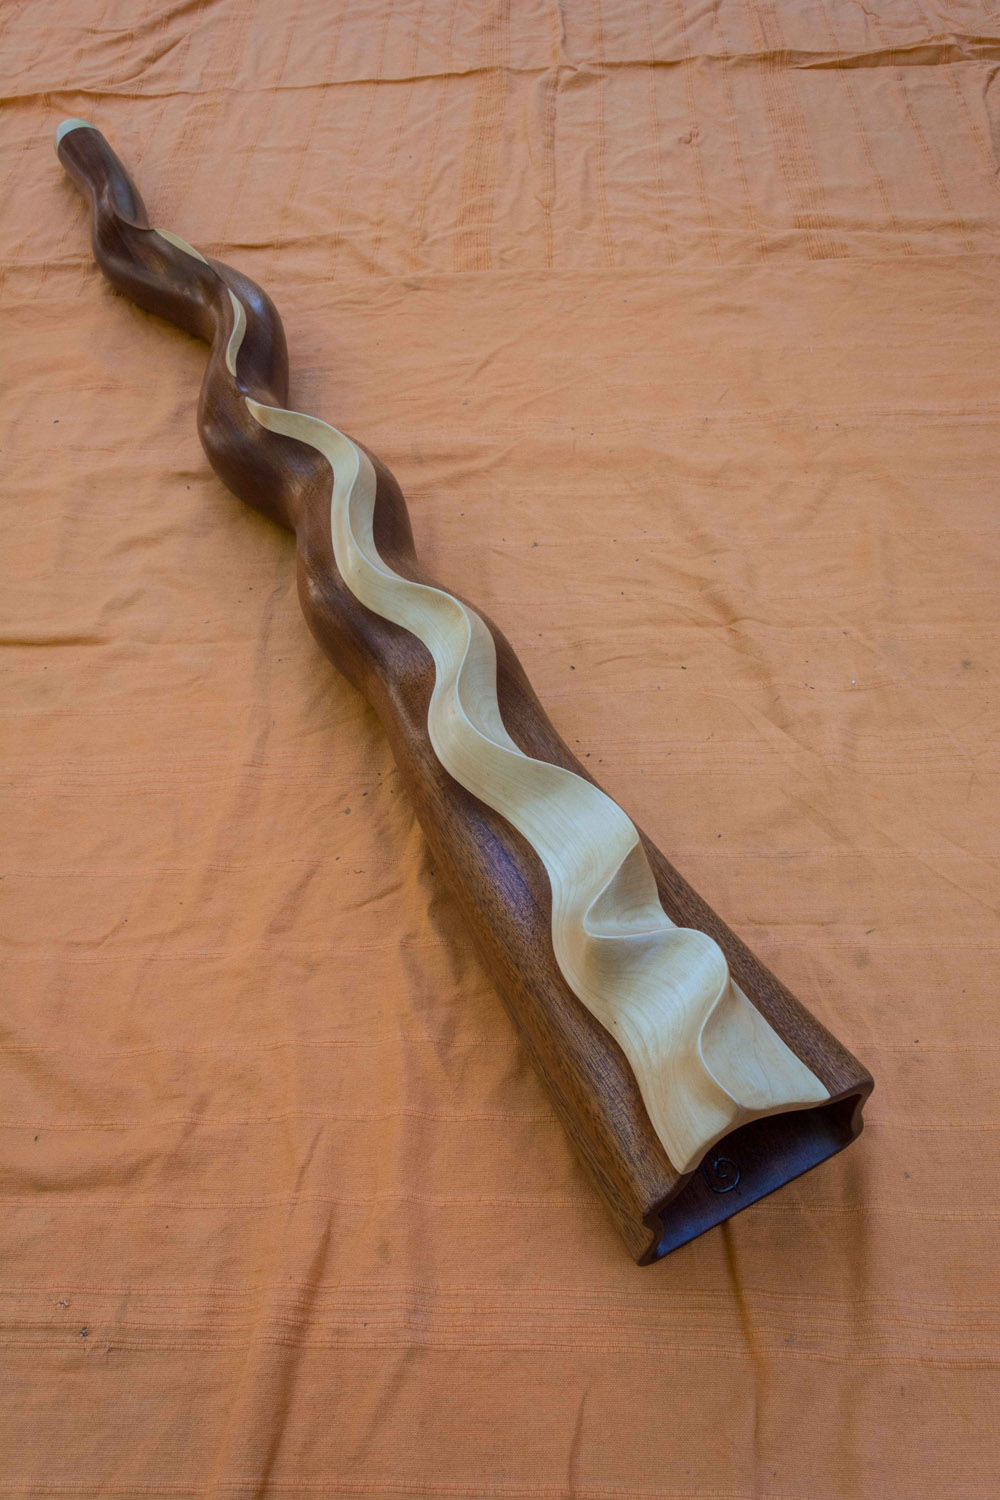 Didgeridoo nommé Mandara, en Ré#, légèrement courbé, fabriqué dans un bois de sipo et d'érable